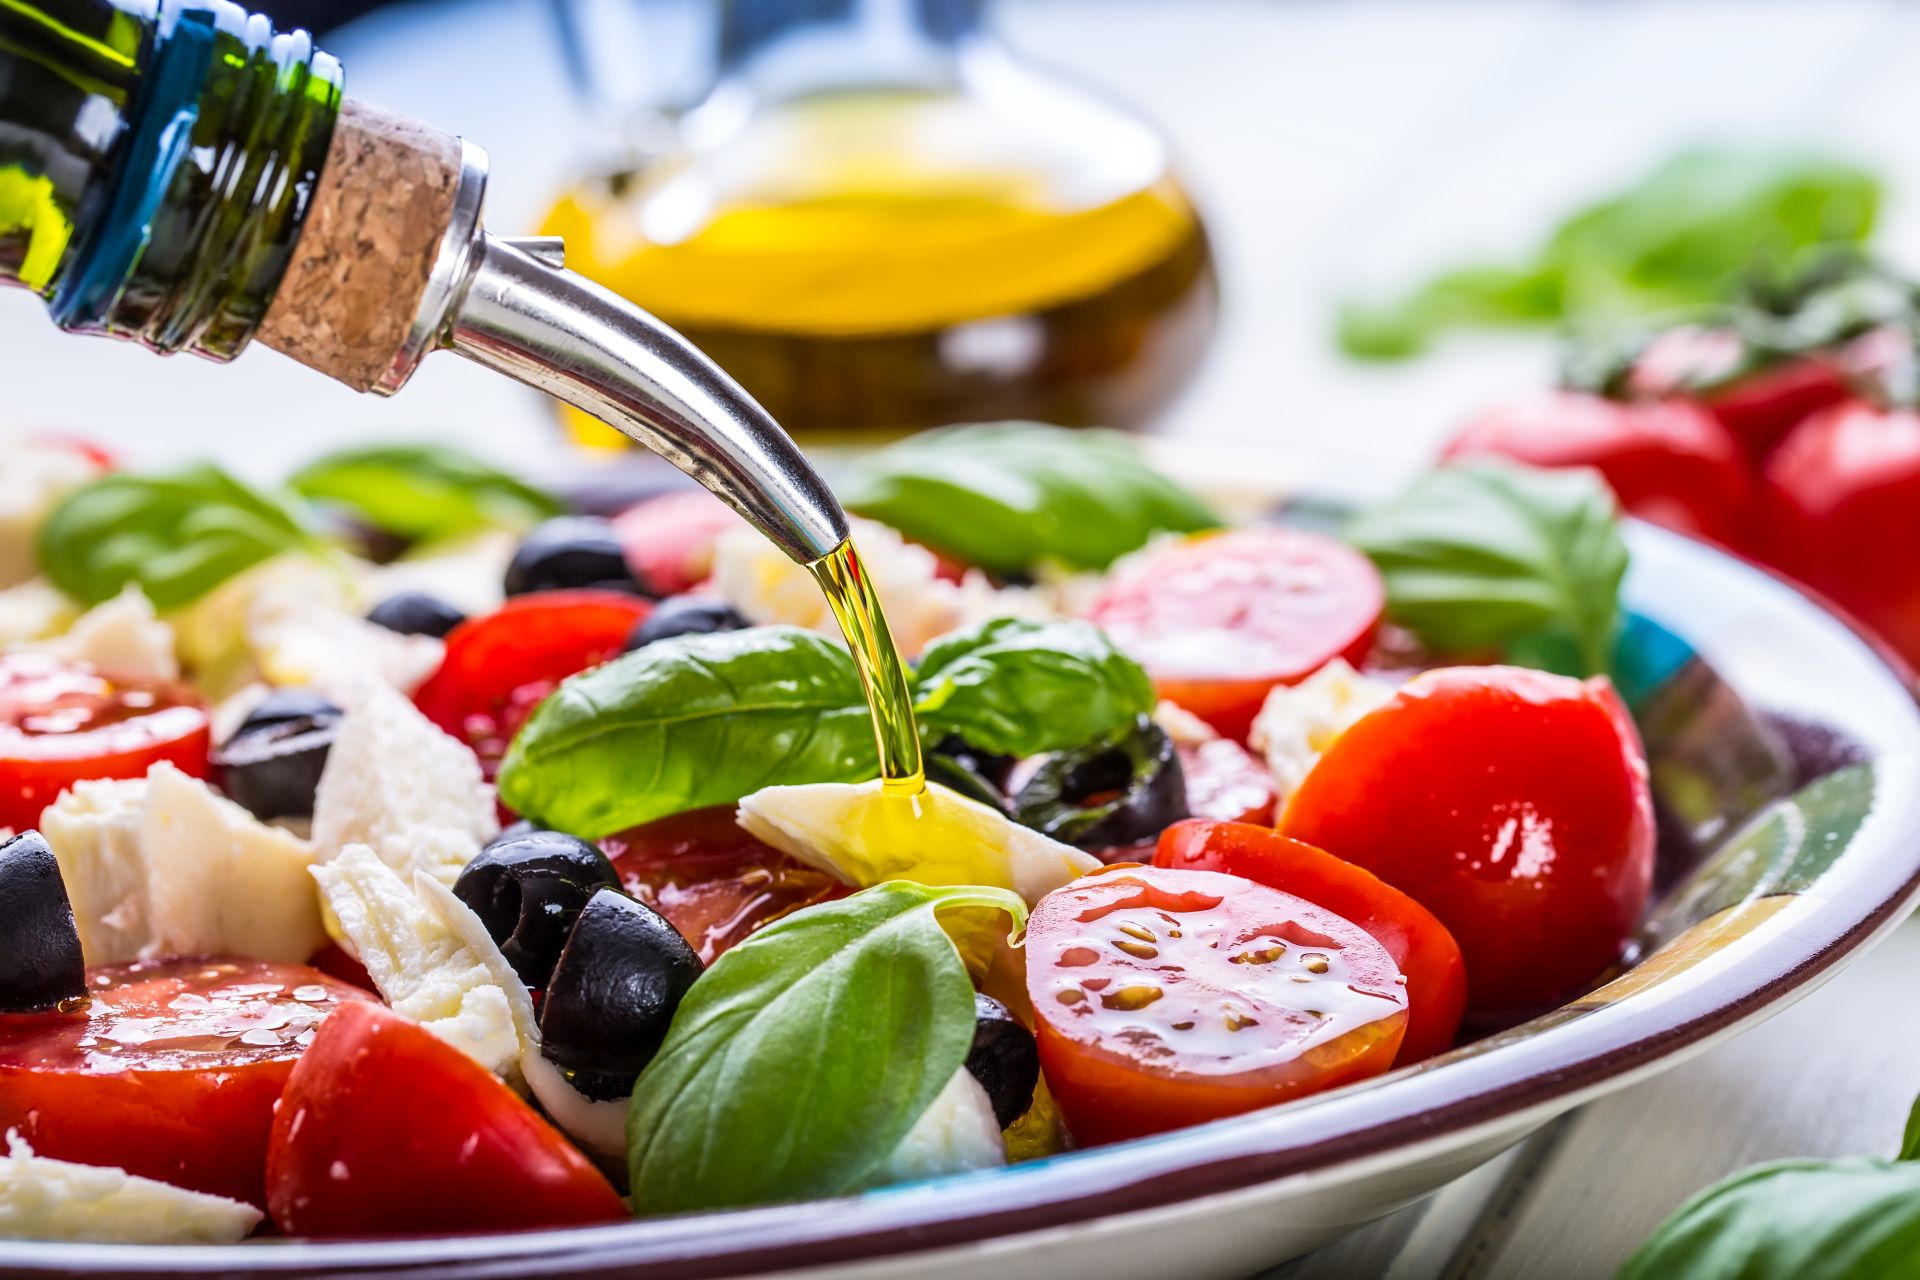 Dieta śródziemnomorska - zasady, jadłospis obejmujący produkty roślinne, zdrowe tłuszcze, nasiona i ziarna, produkty zbożowe - wspiera pracę serca, profilaktykę obniżania cholesterolu i wzmocnienia organizmu.